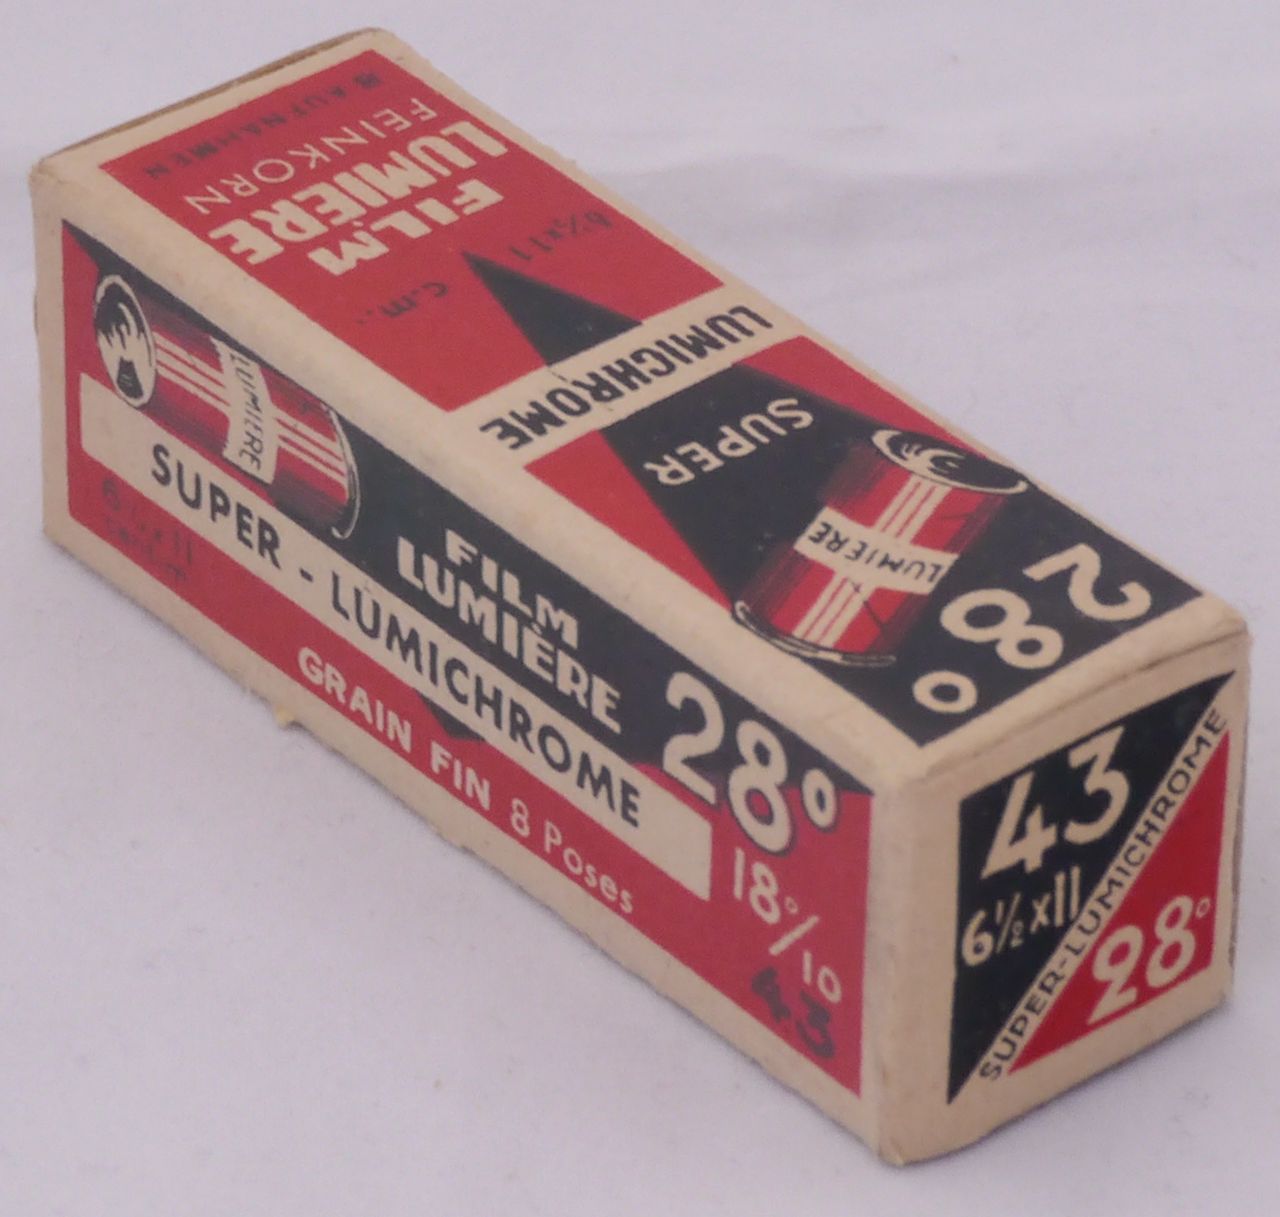 Super-Lumichrome 28° n°43 - format 6,5x11 cm - expire en 1950